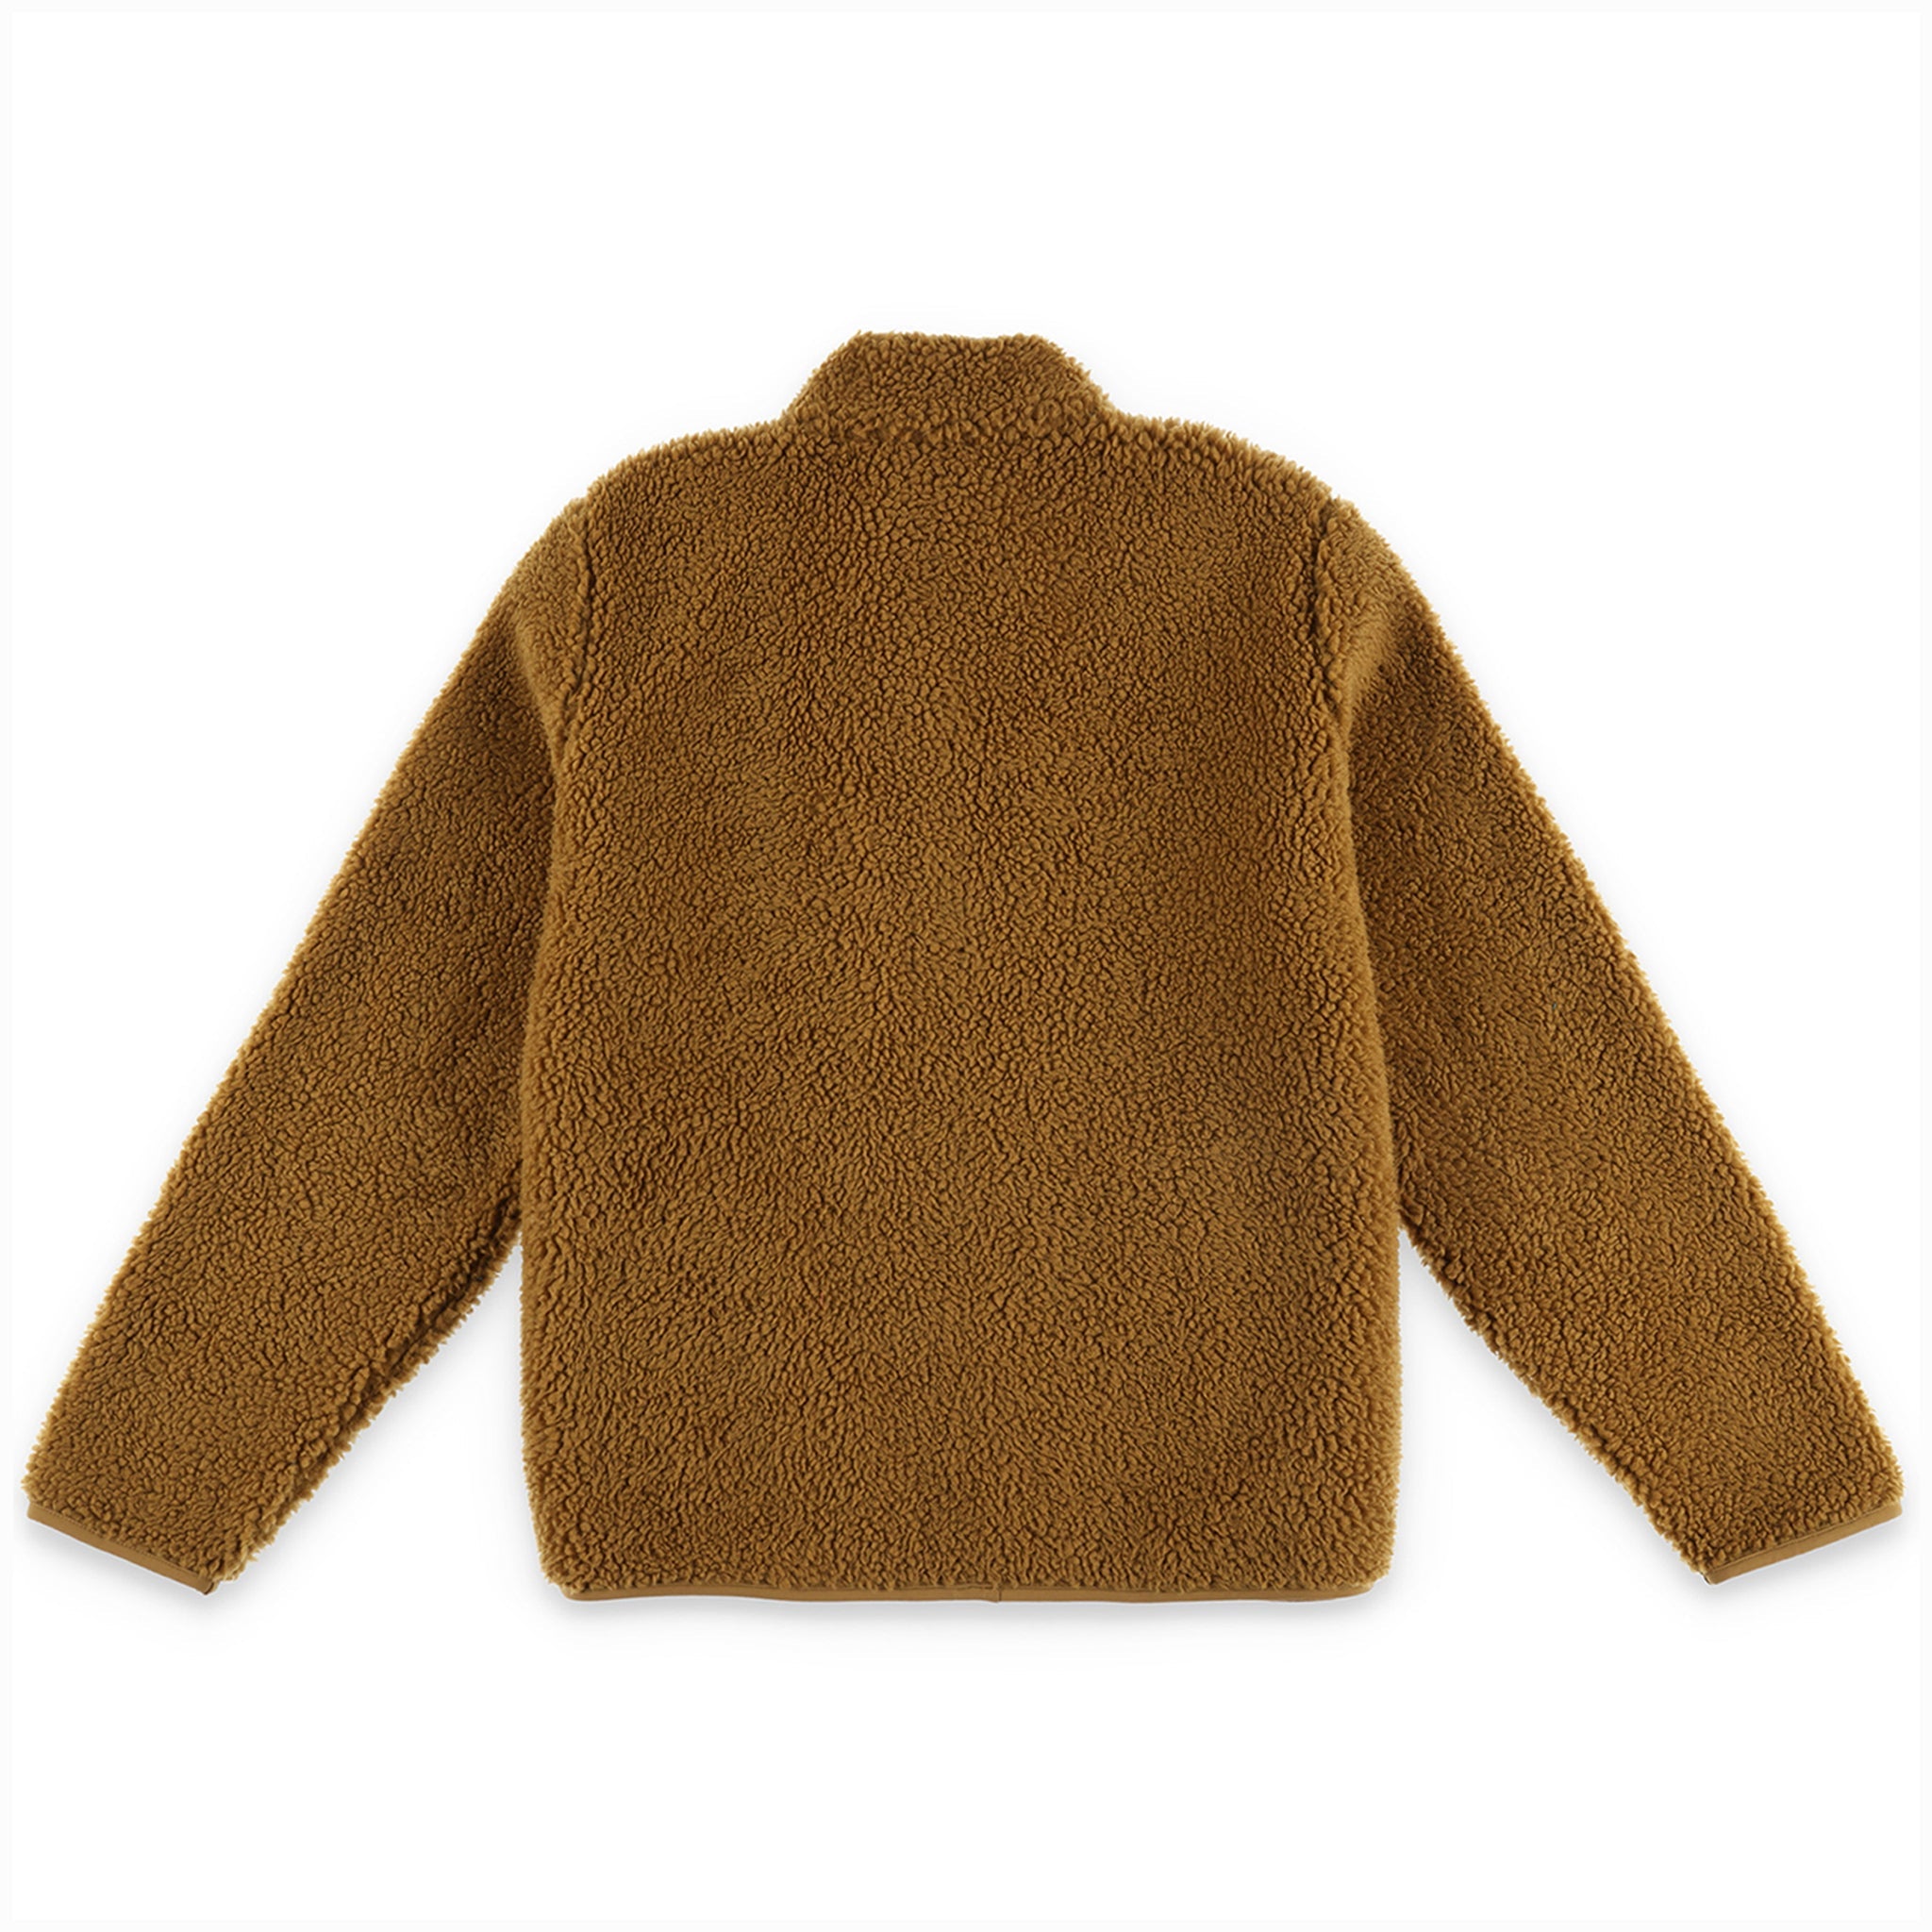 Back of Topo Designs Men's Sherpa Jacket in "Dark Khaki" brown showing sherpa fleece side.